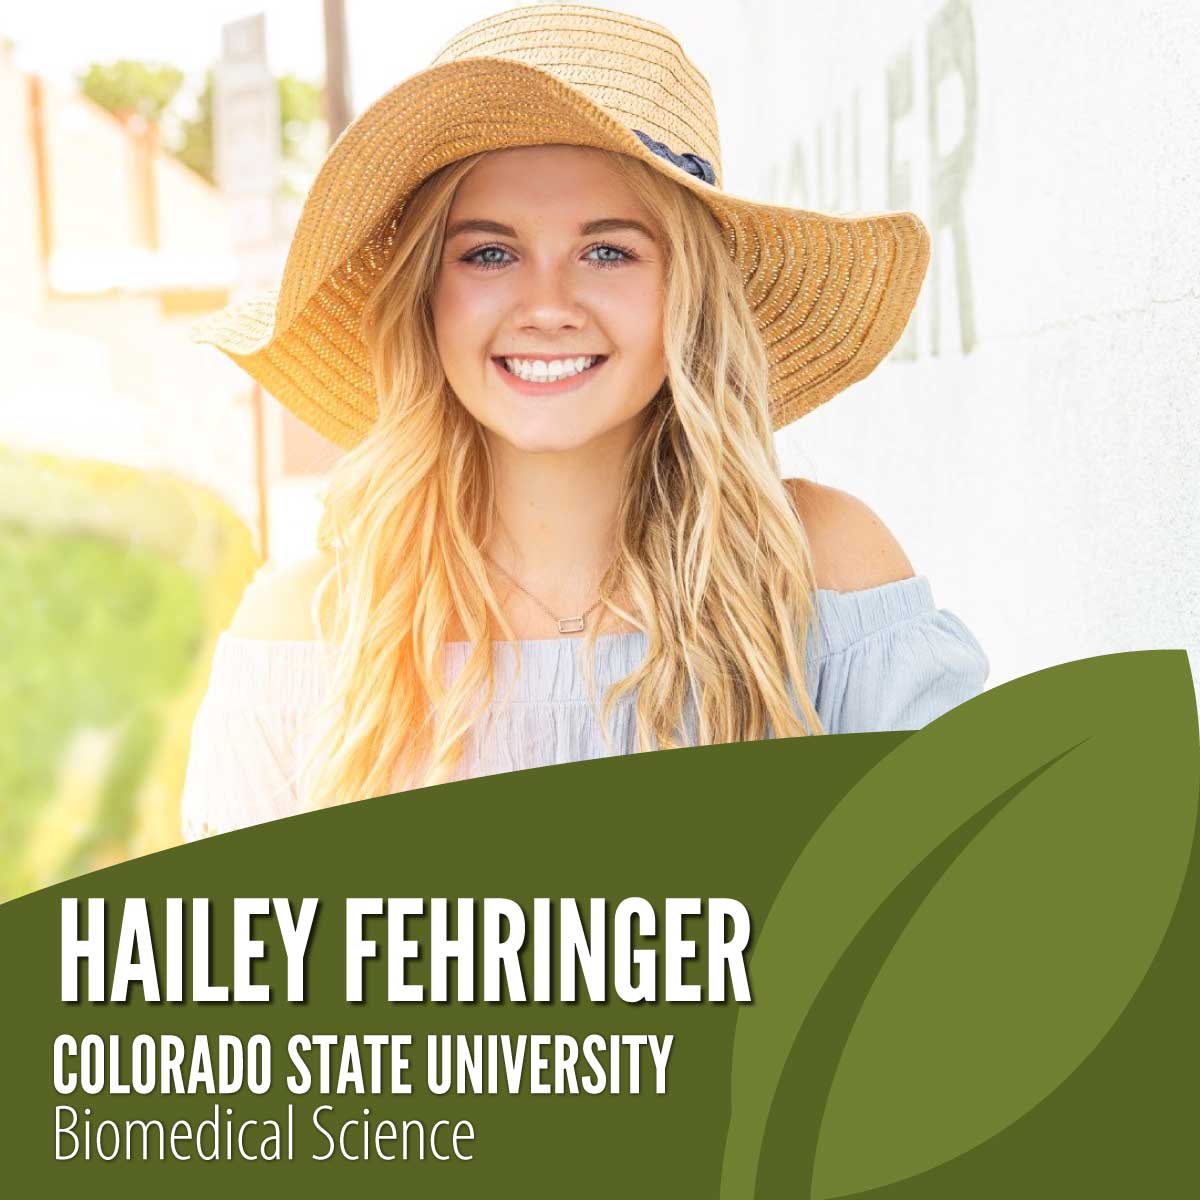 Hailey Fehringer